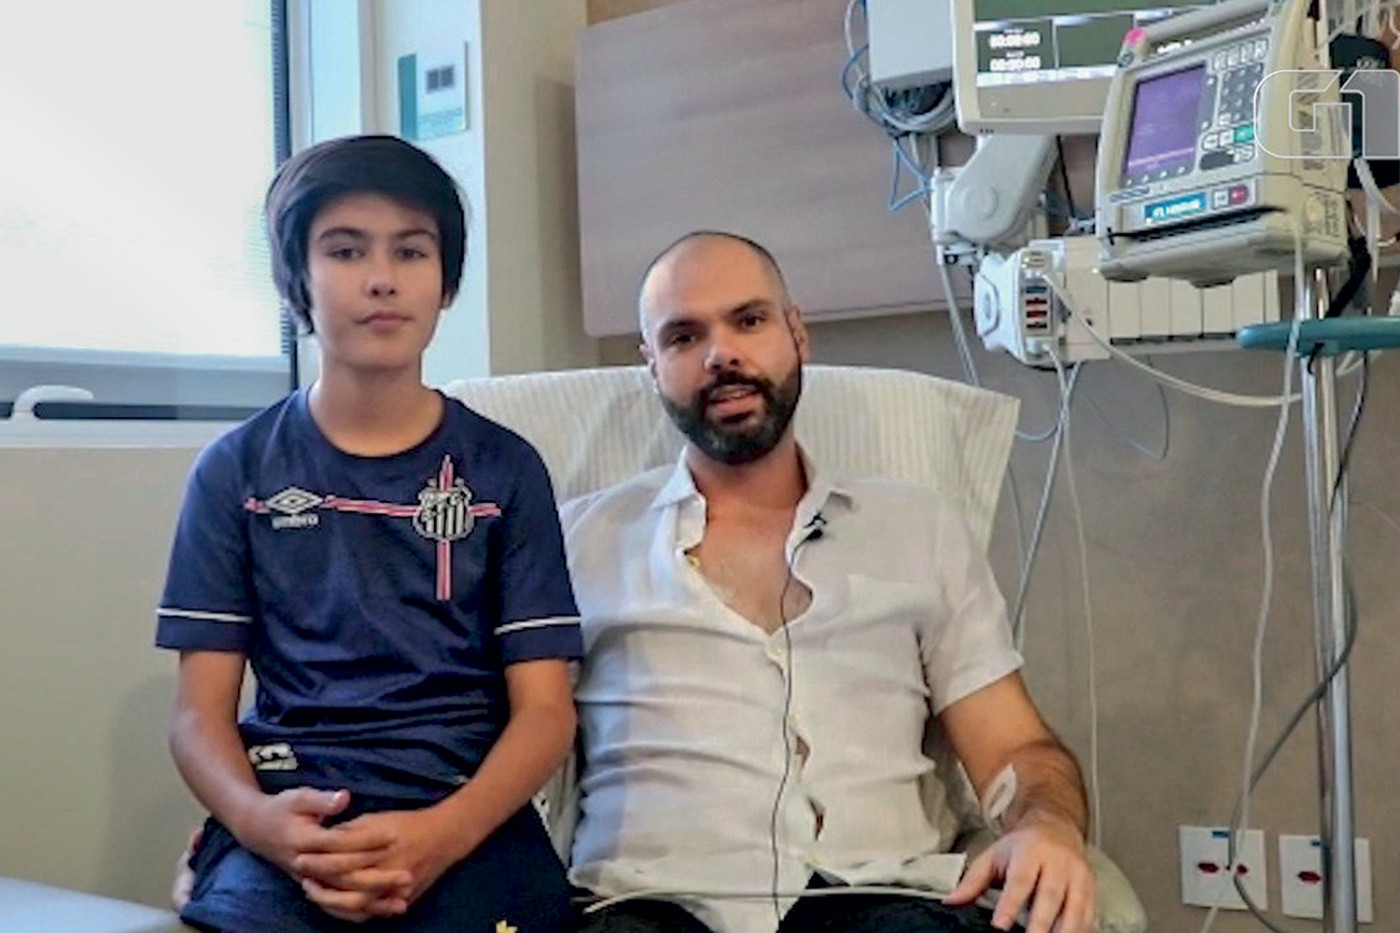 bruno-covas-video-hospital-cancer-2019